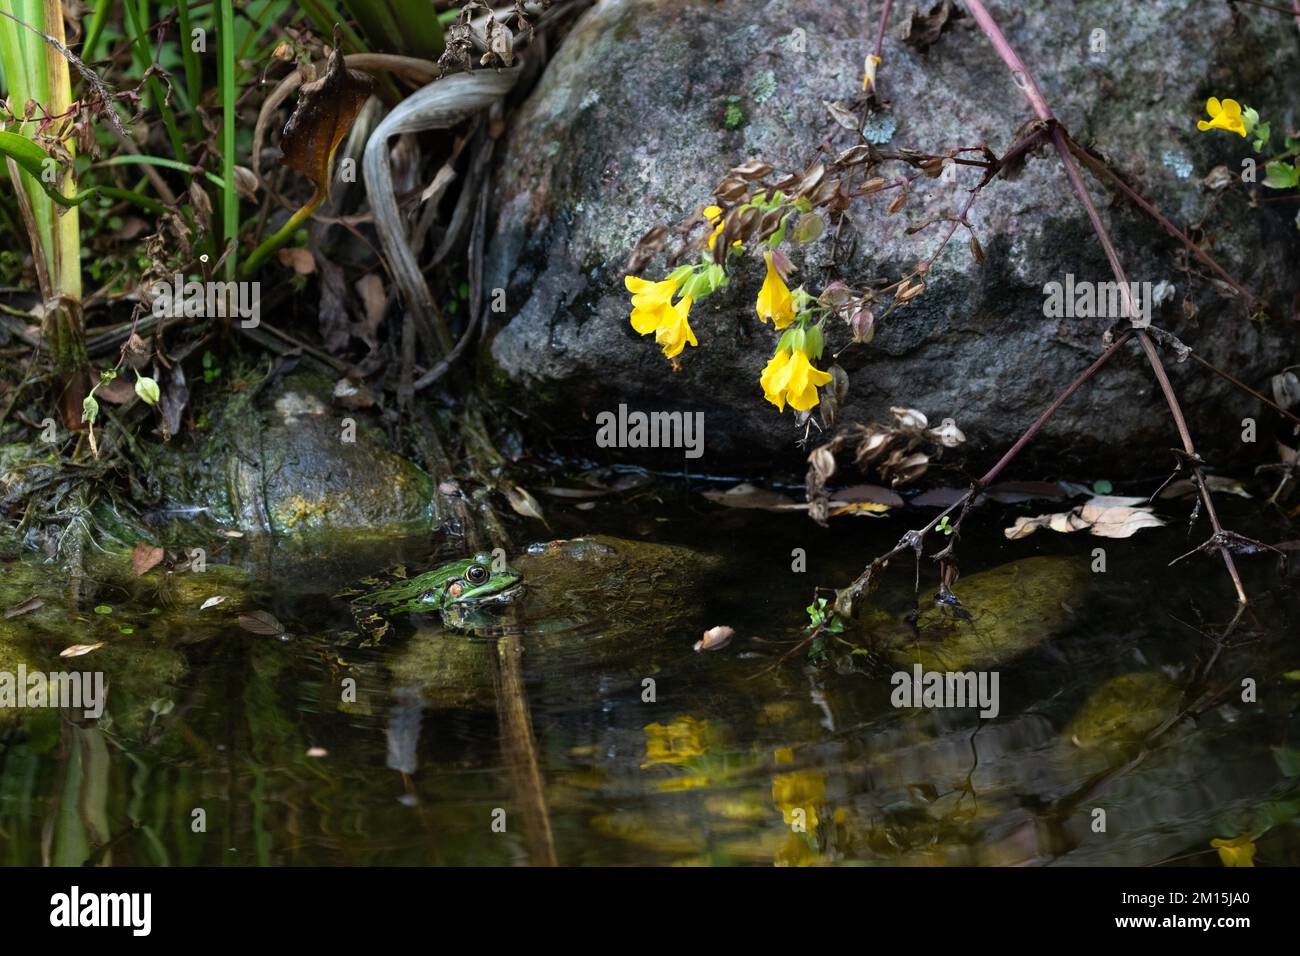 Une grenouille d'étang verte se trouve dans l'eau sur une pierre devant un rocher dans un étang. Les fleurs d'une fleur jaune sont reflétées dans l'eau. Banque D'Images